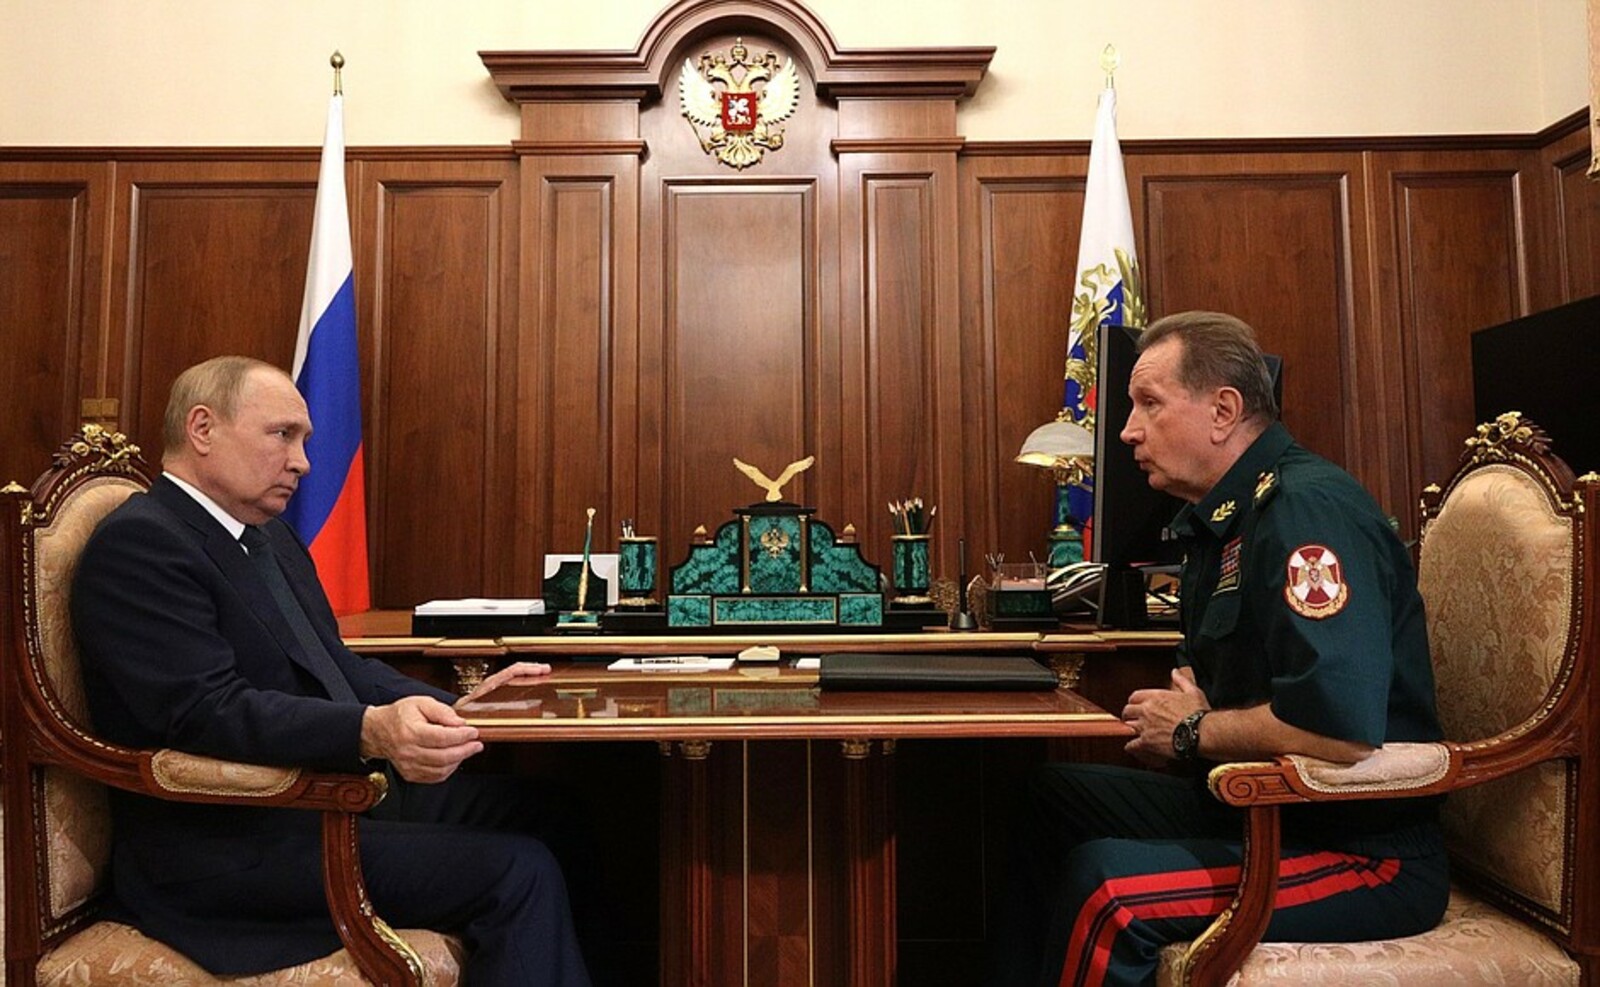 Встреча с директором Федеральной службы войск национальной гвардии Виктором Золотовым